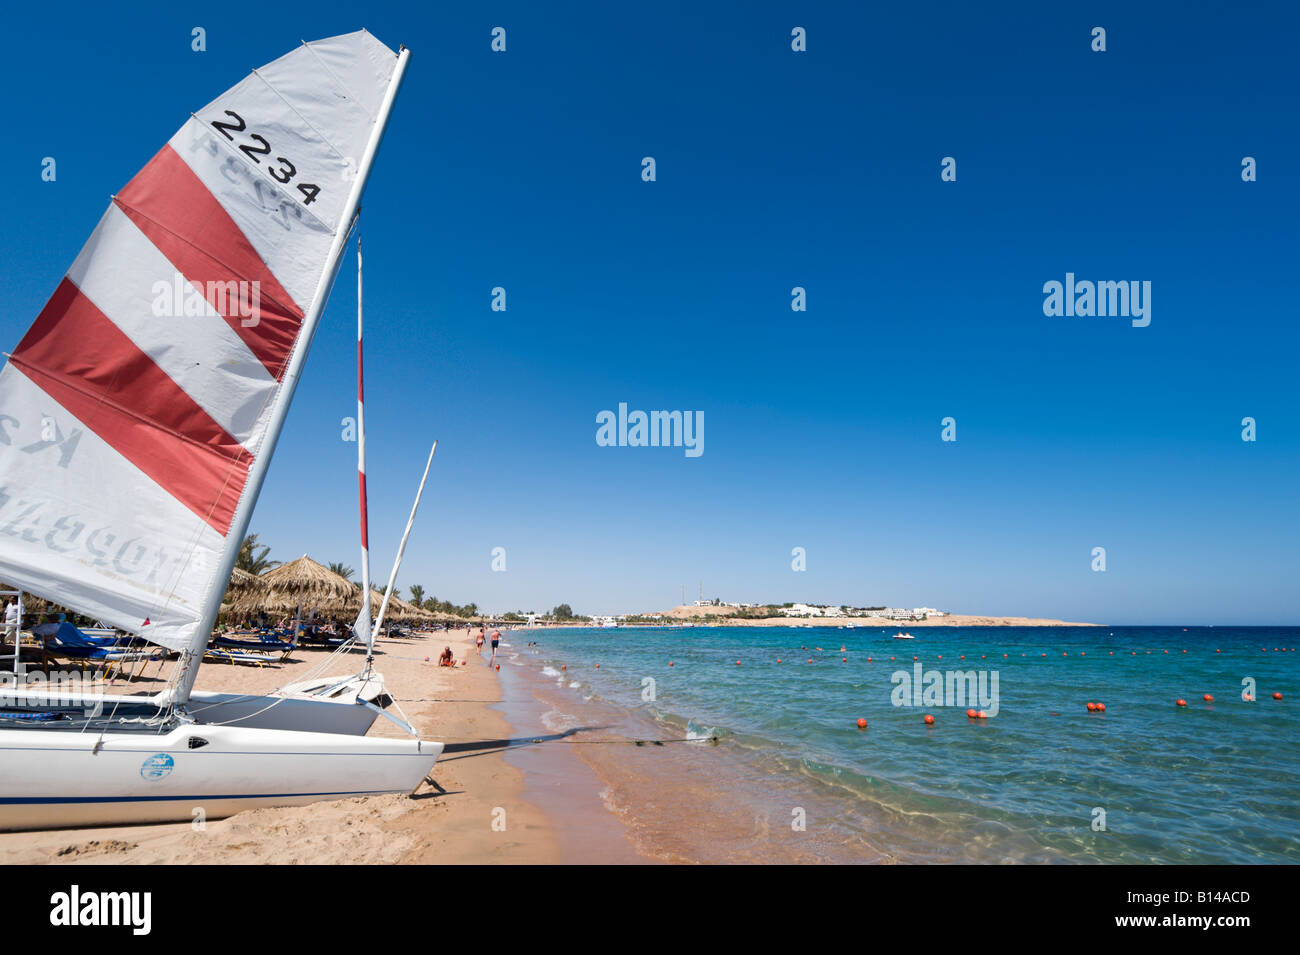 Deportes acuáticos en la playa de la Bahía de Naama, Sharm el-Sheikh, en la costa del Mar Rojo, al sur del Sinaí, Egipto Foto de stock